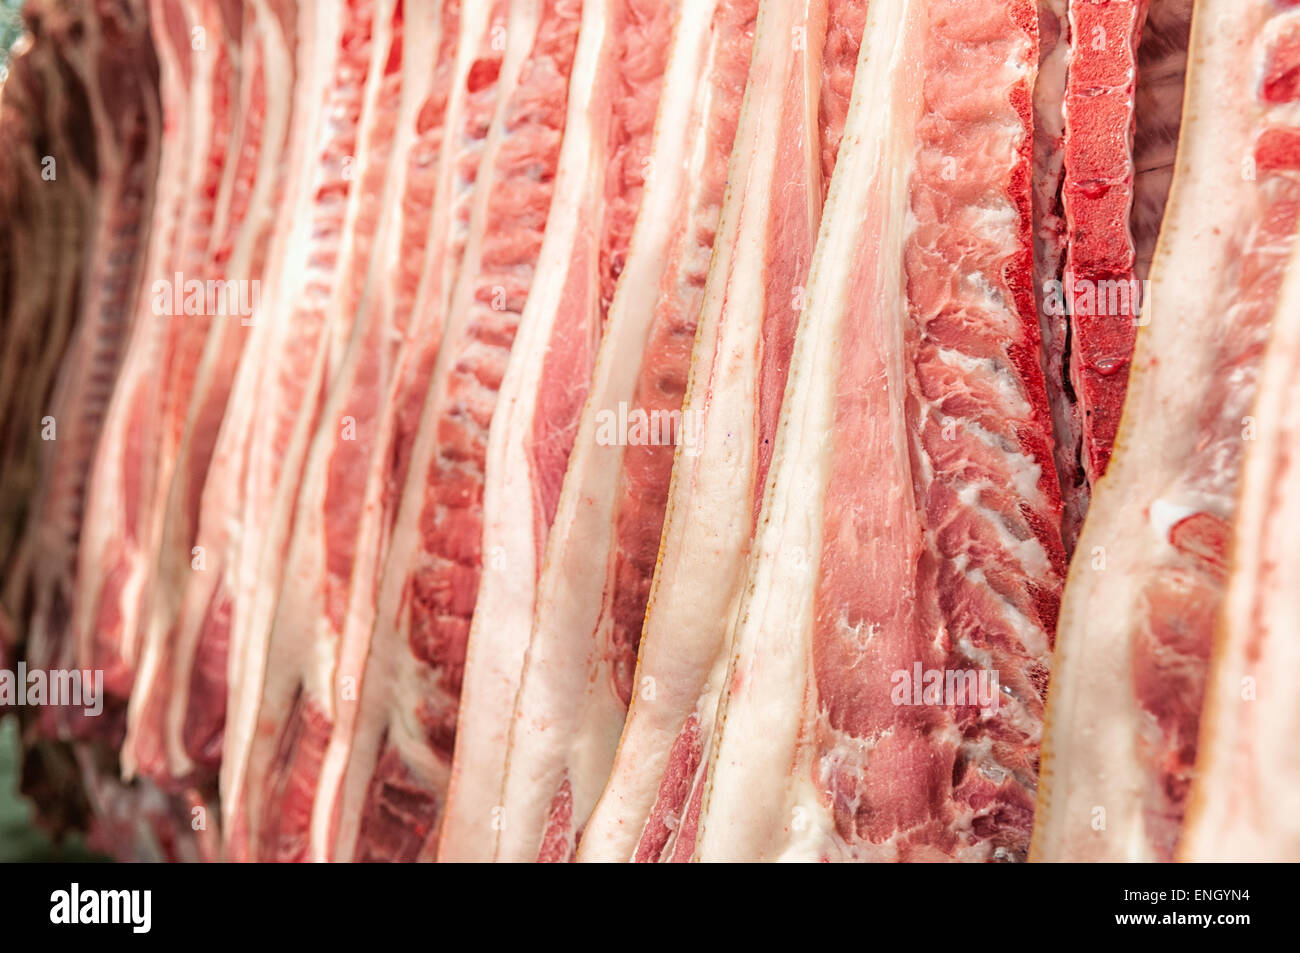 La viande fraîche de porcs dans une usine de coupe à froid Banque D'Images